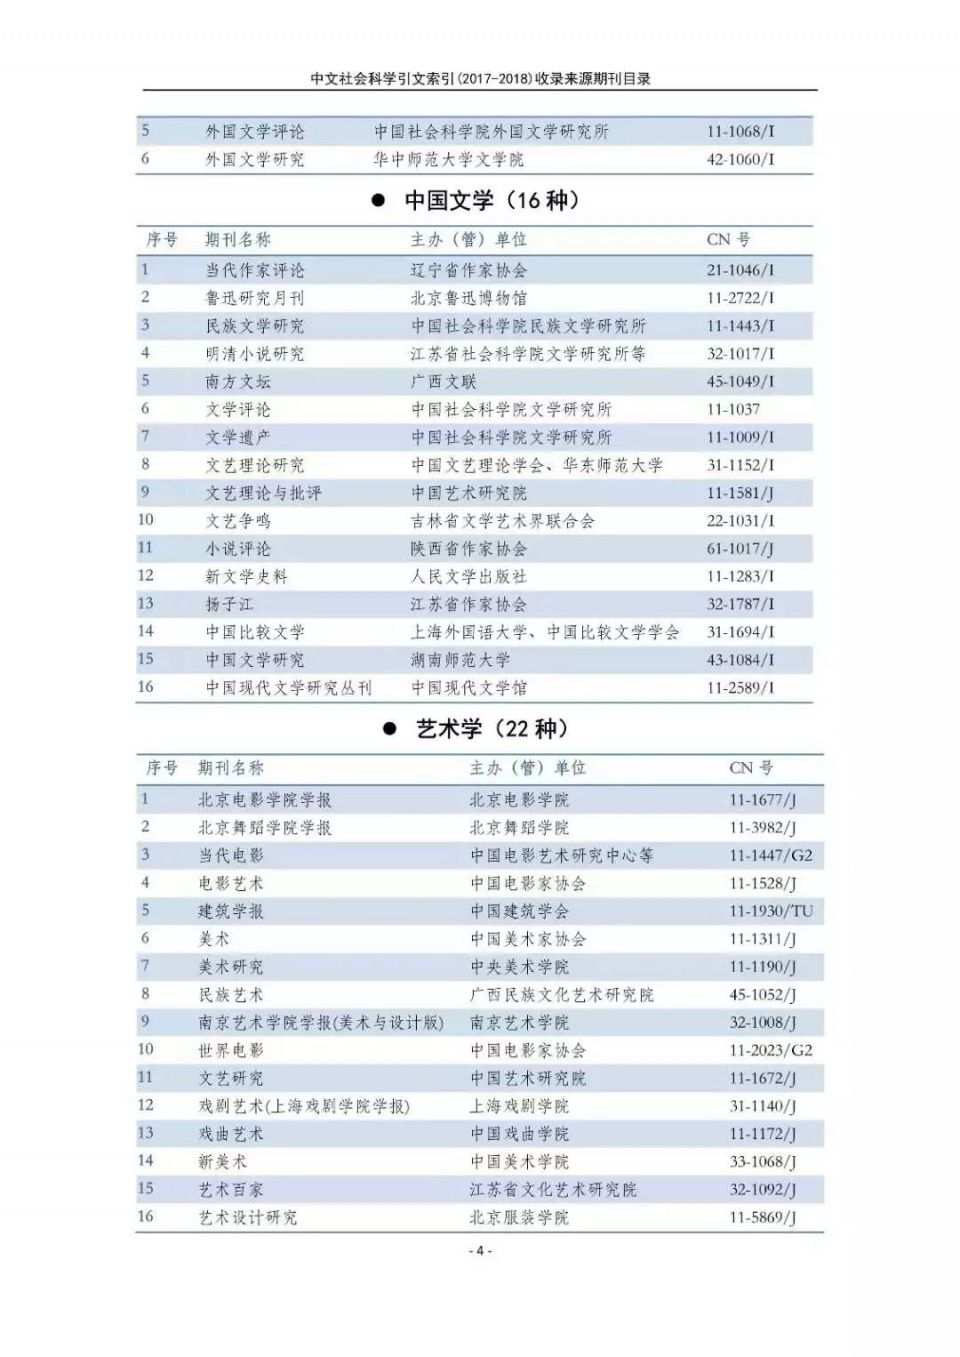 南大核心CSSCI官网发布最新名单!